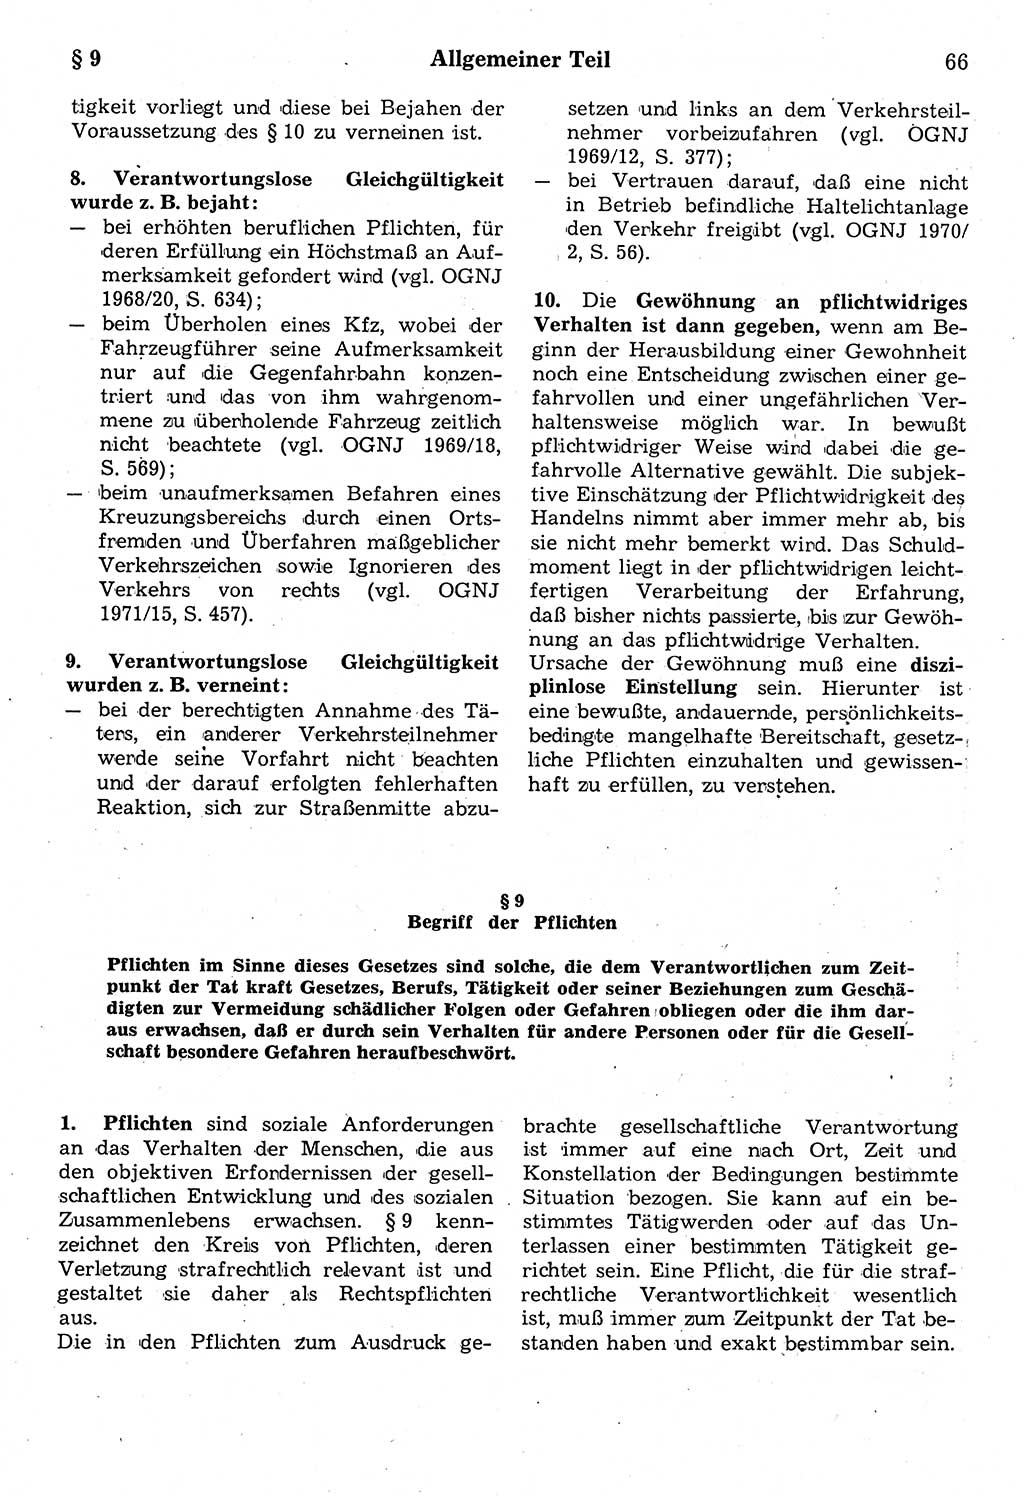 Strafrecht der Deutschen Demokratischen Republik (DDR), Kommentar zum Strafgesetzbuch (StGB) 1987, Seite 66 (Strafr. DDR Komm. StGB 1987, S. 66)